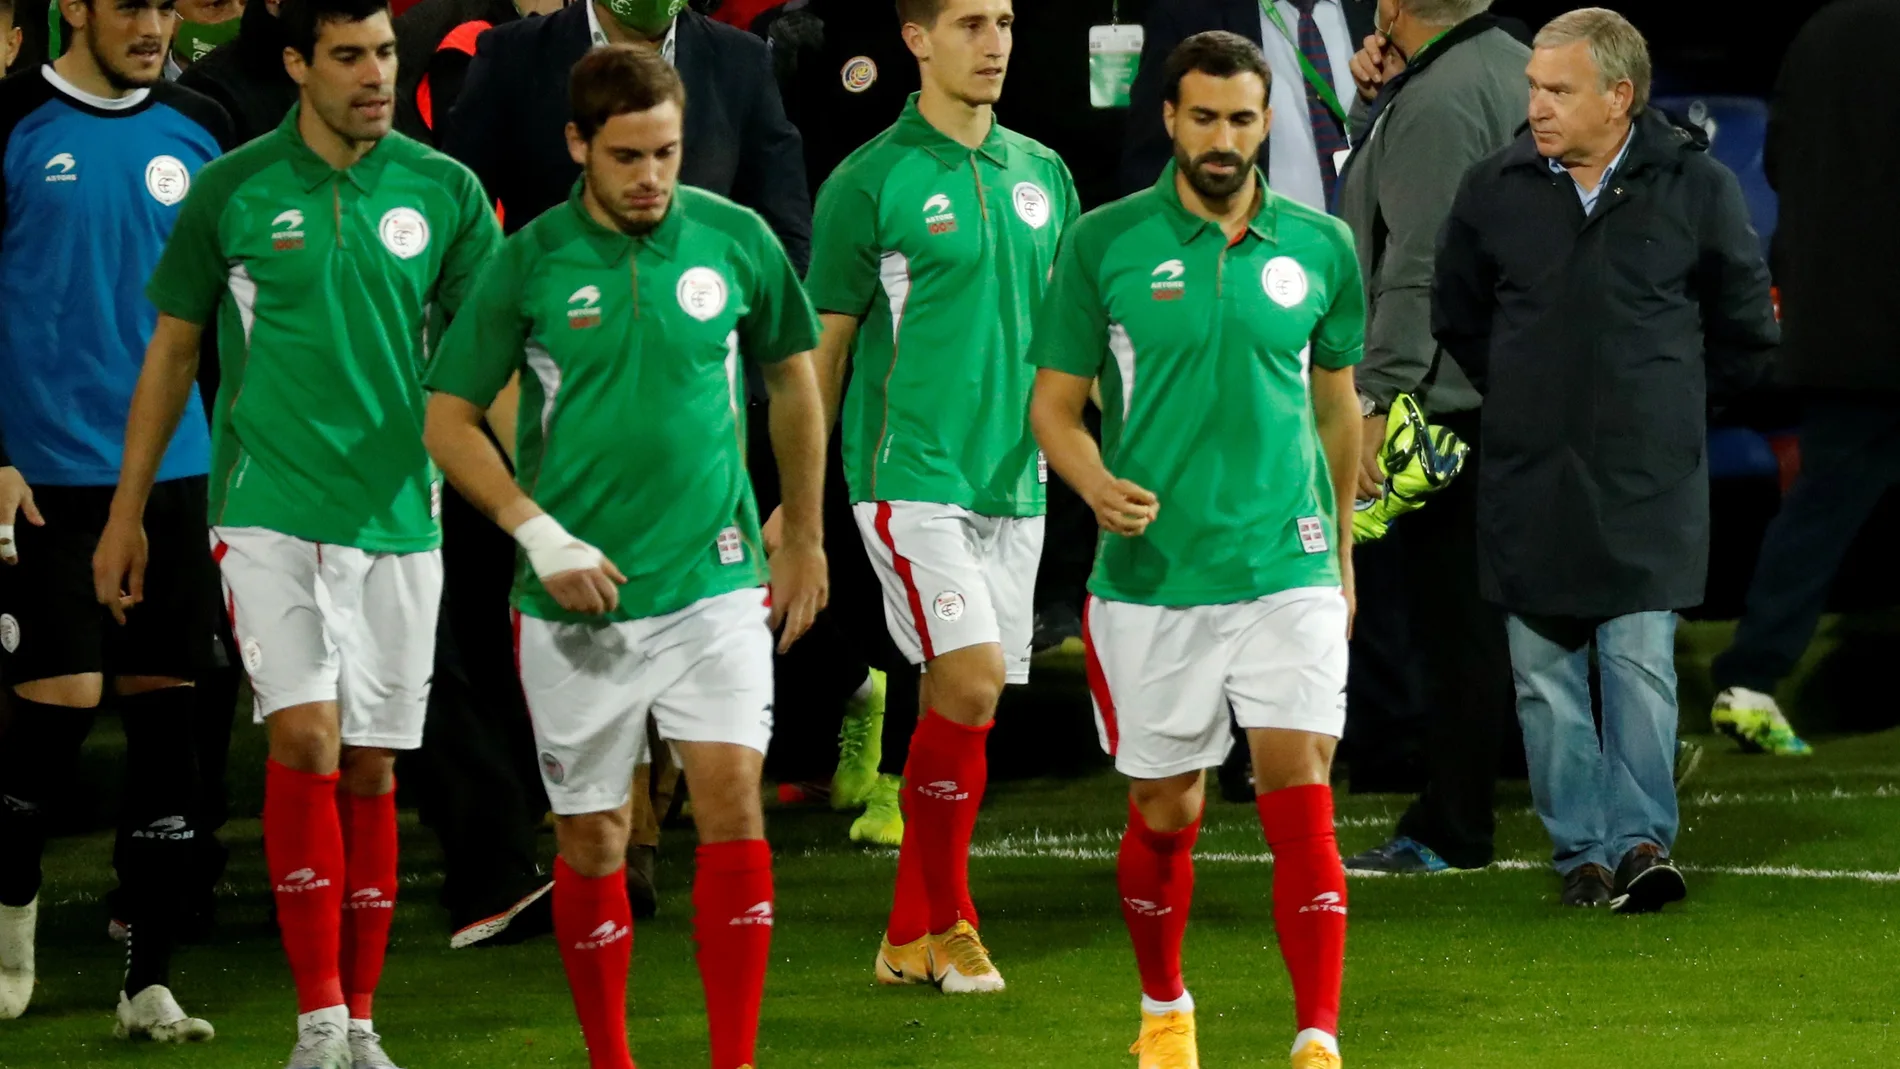 La selección de Euskadi celebró su último partido en 2020